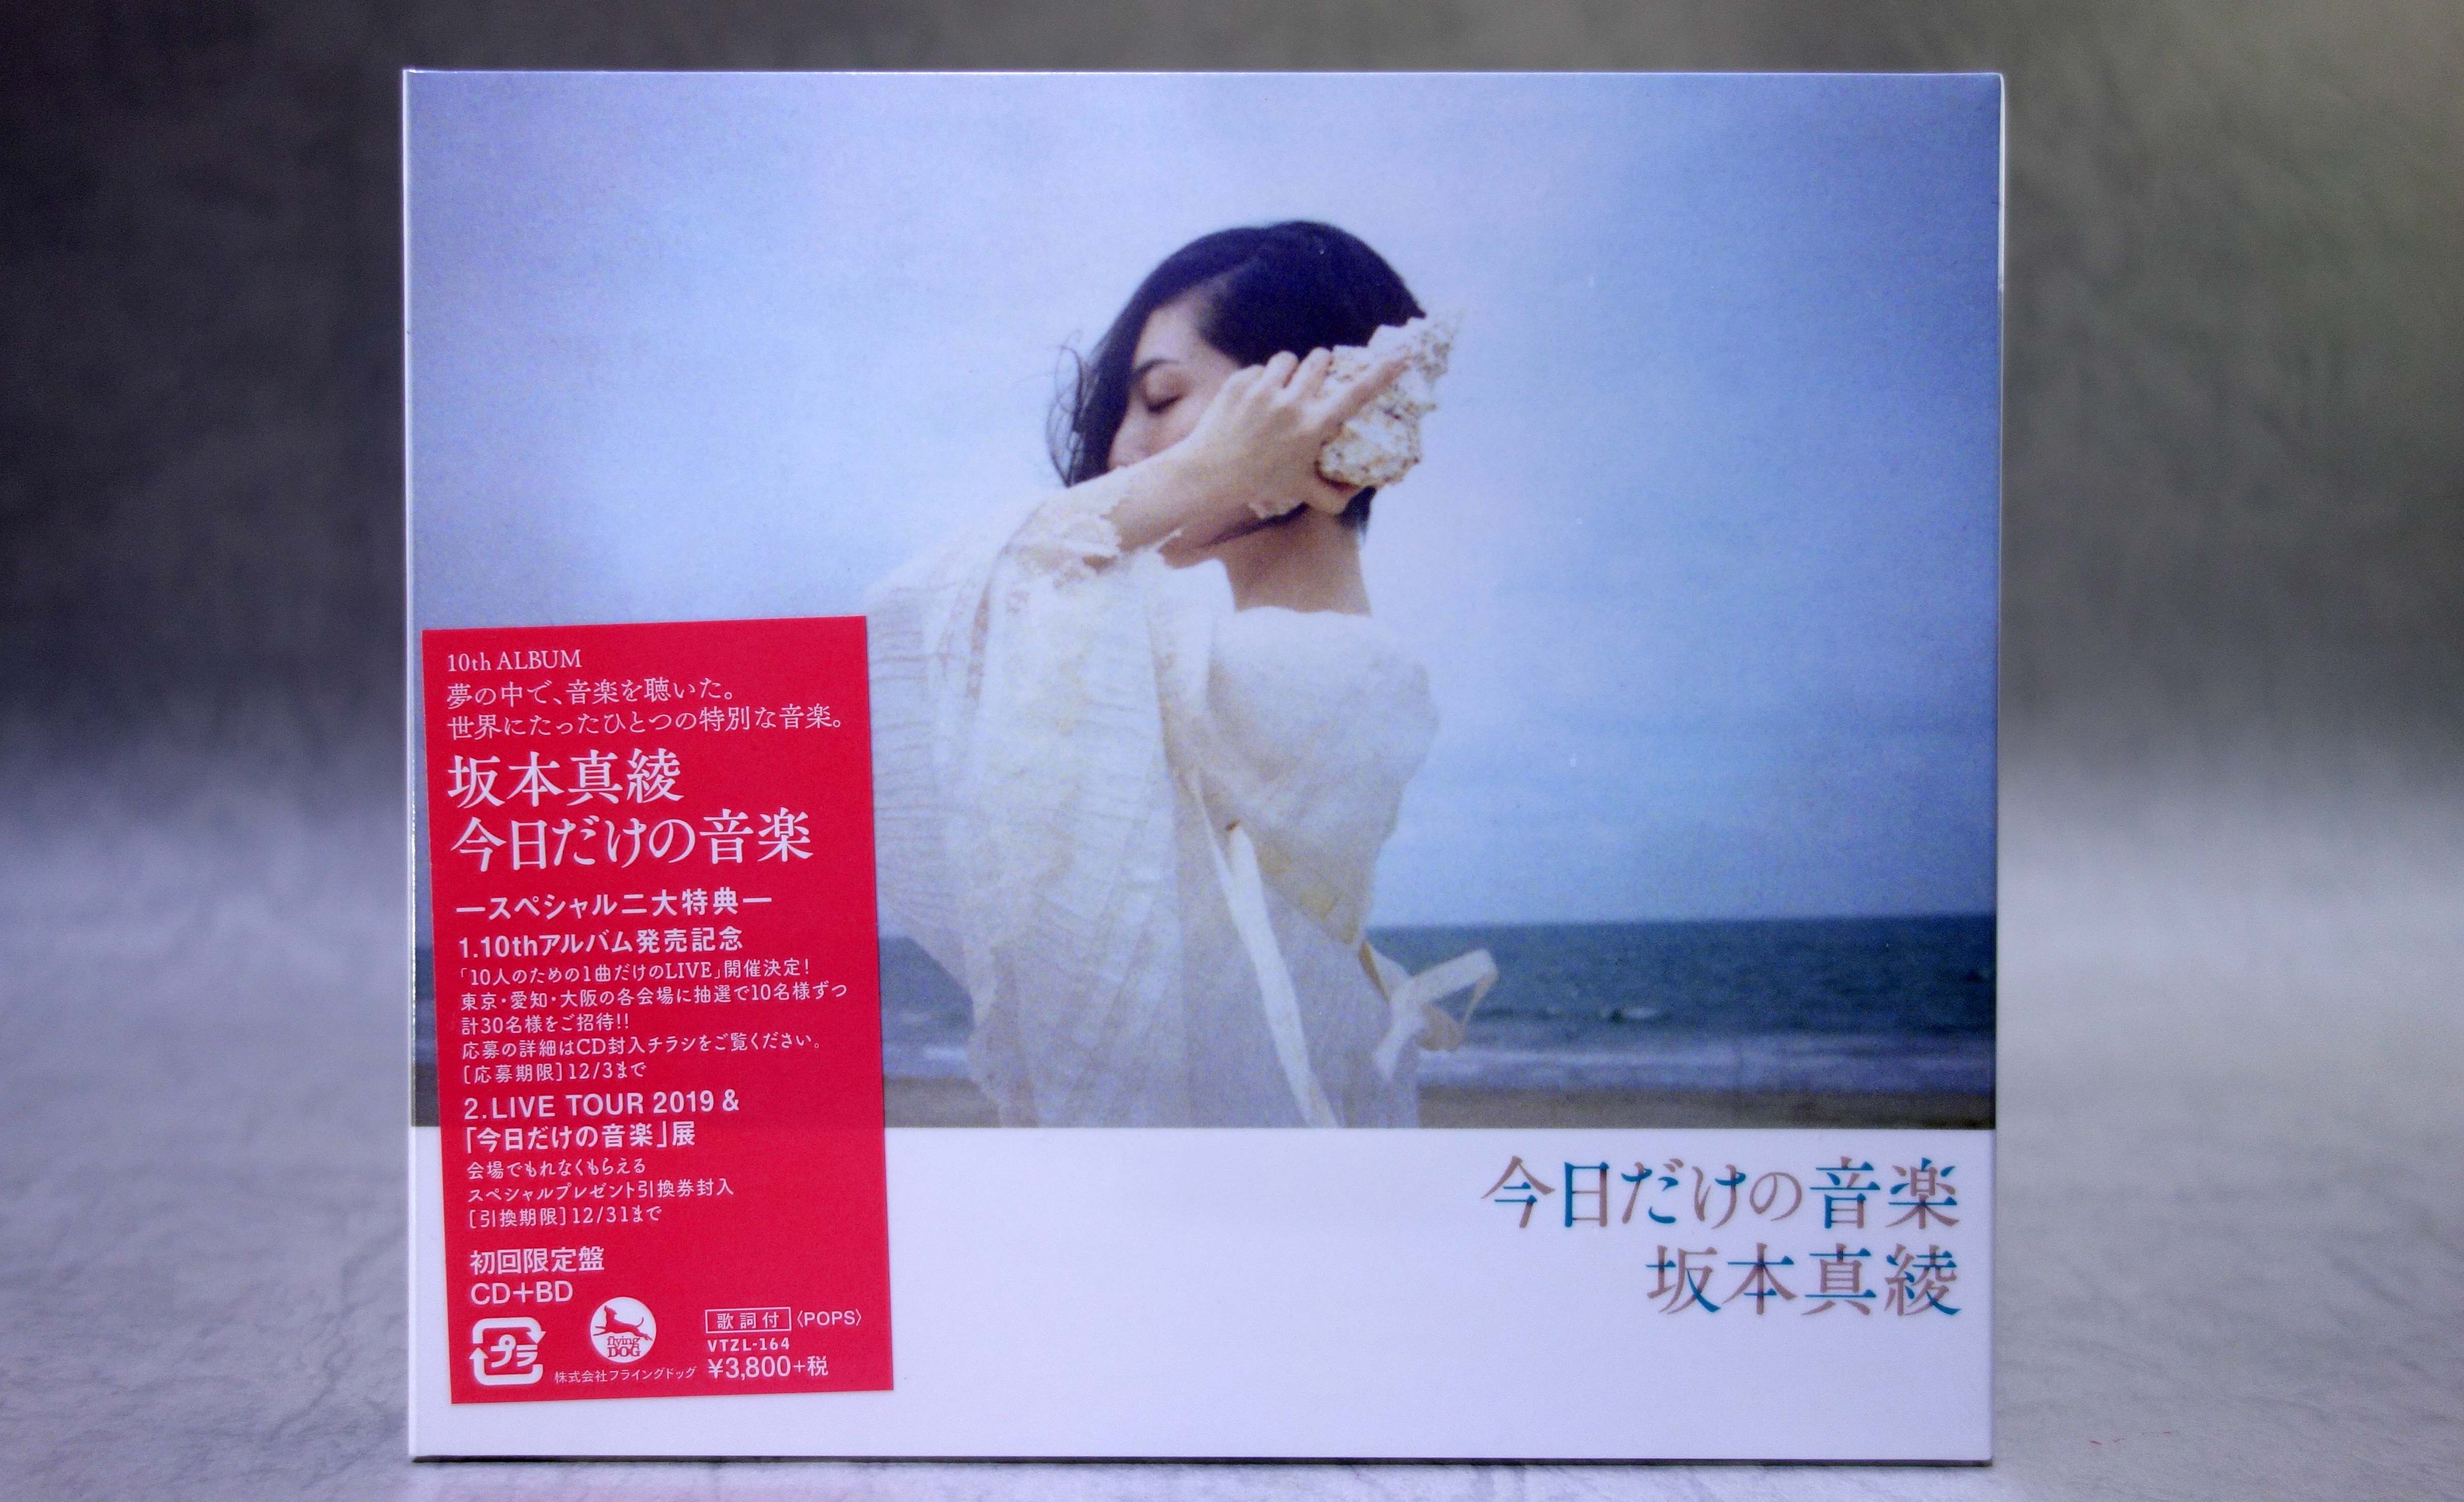 坂本真綾 CD Blu-ray Disc付 今日だけの音楽 初回限定盤 【92%OFF!】 今日だけの音楽